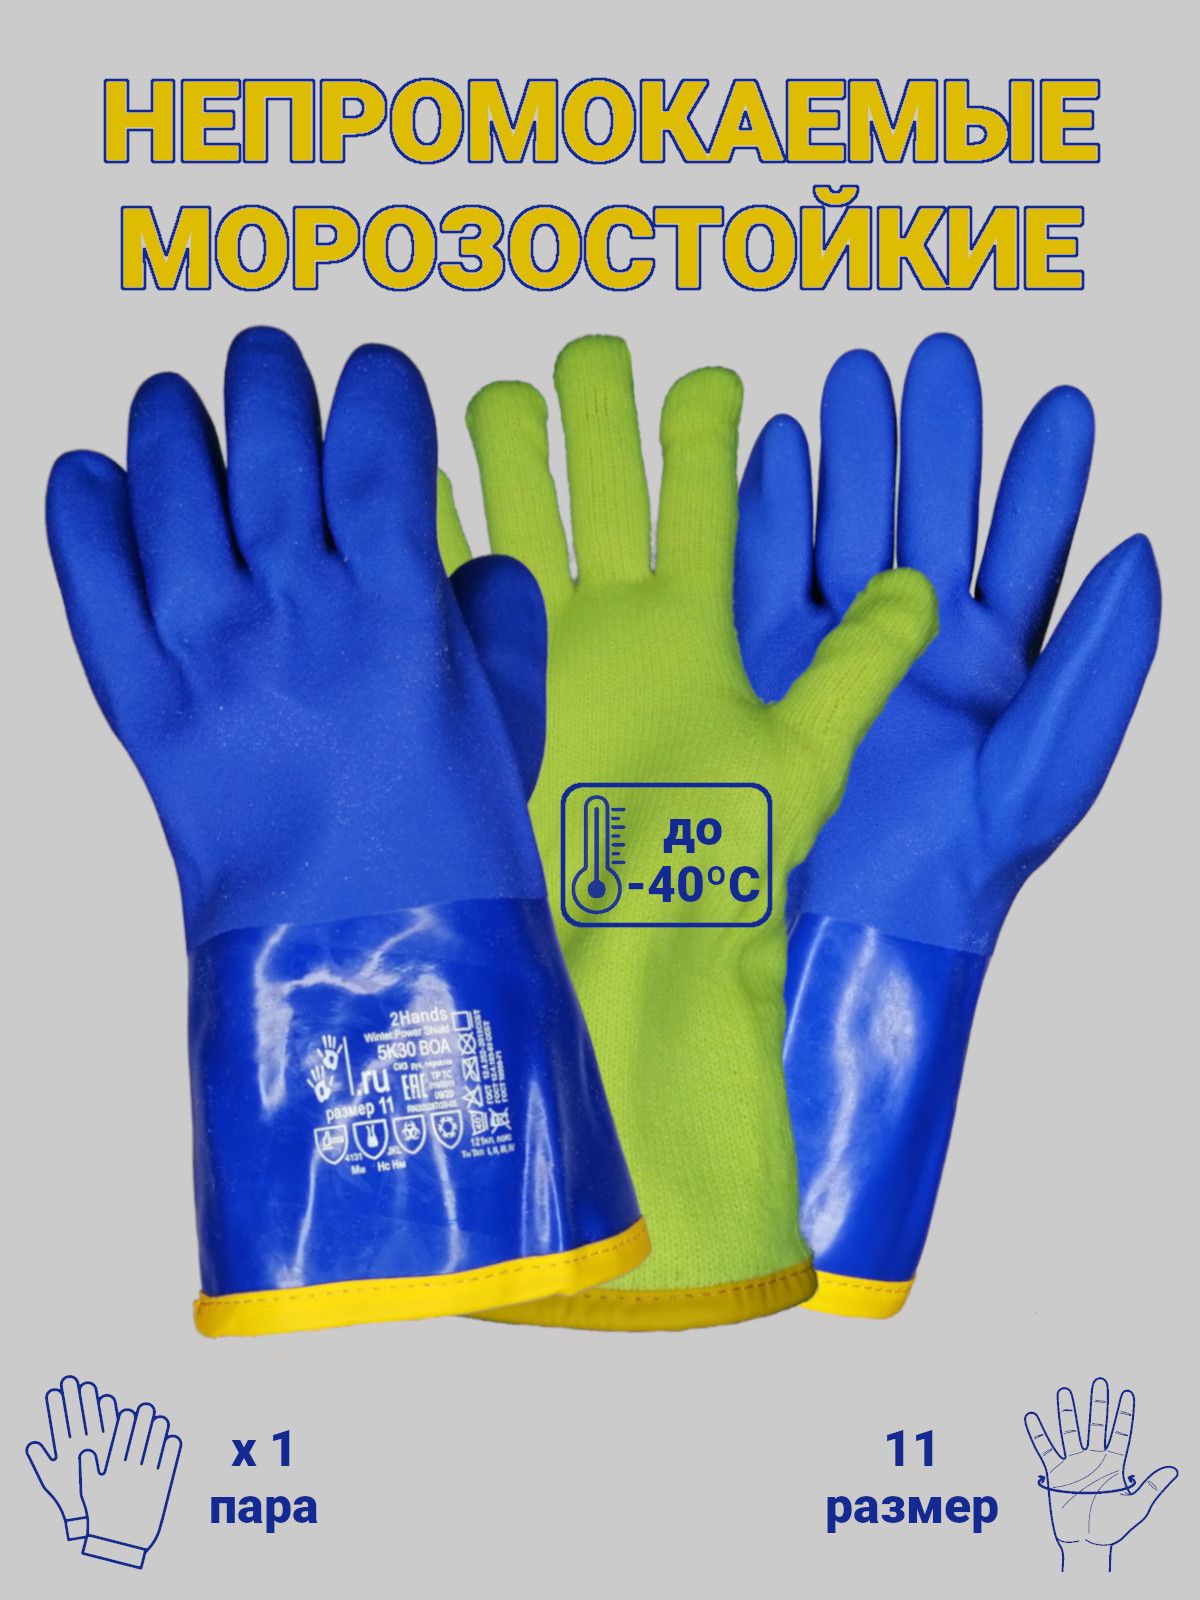 Зимние рабочие перчатки: как выбрать утепленные перчатки для работы на морозе, теплые шерстяные монтажные и другие